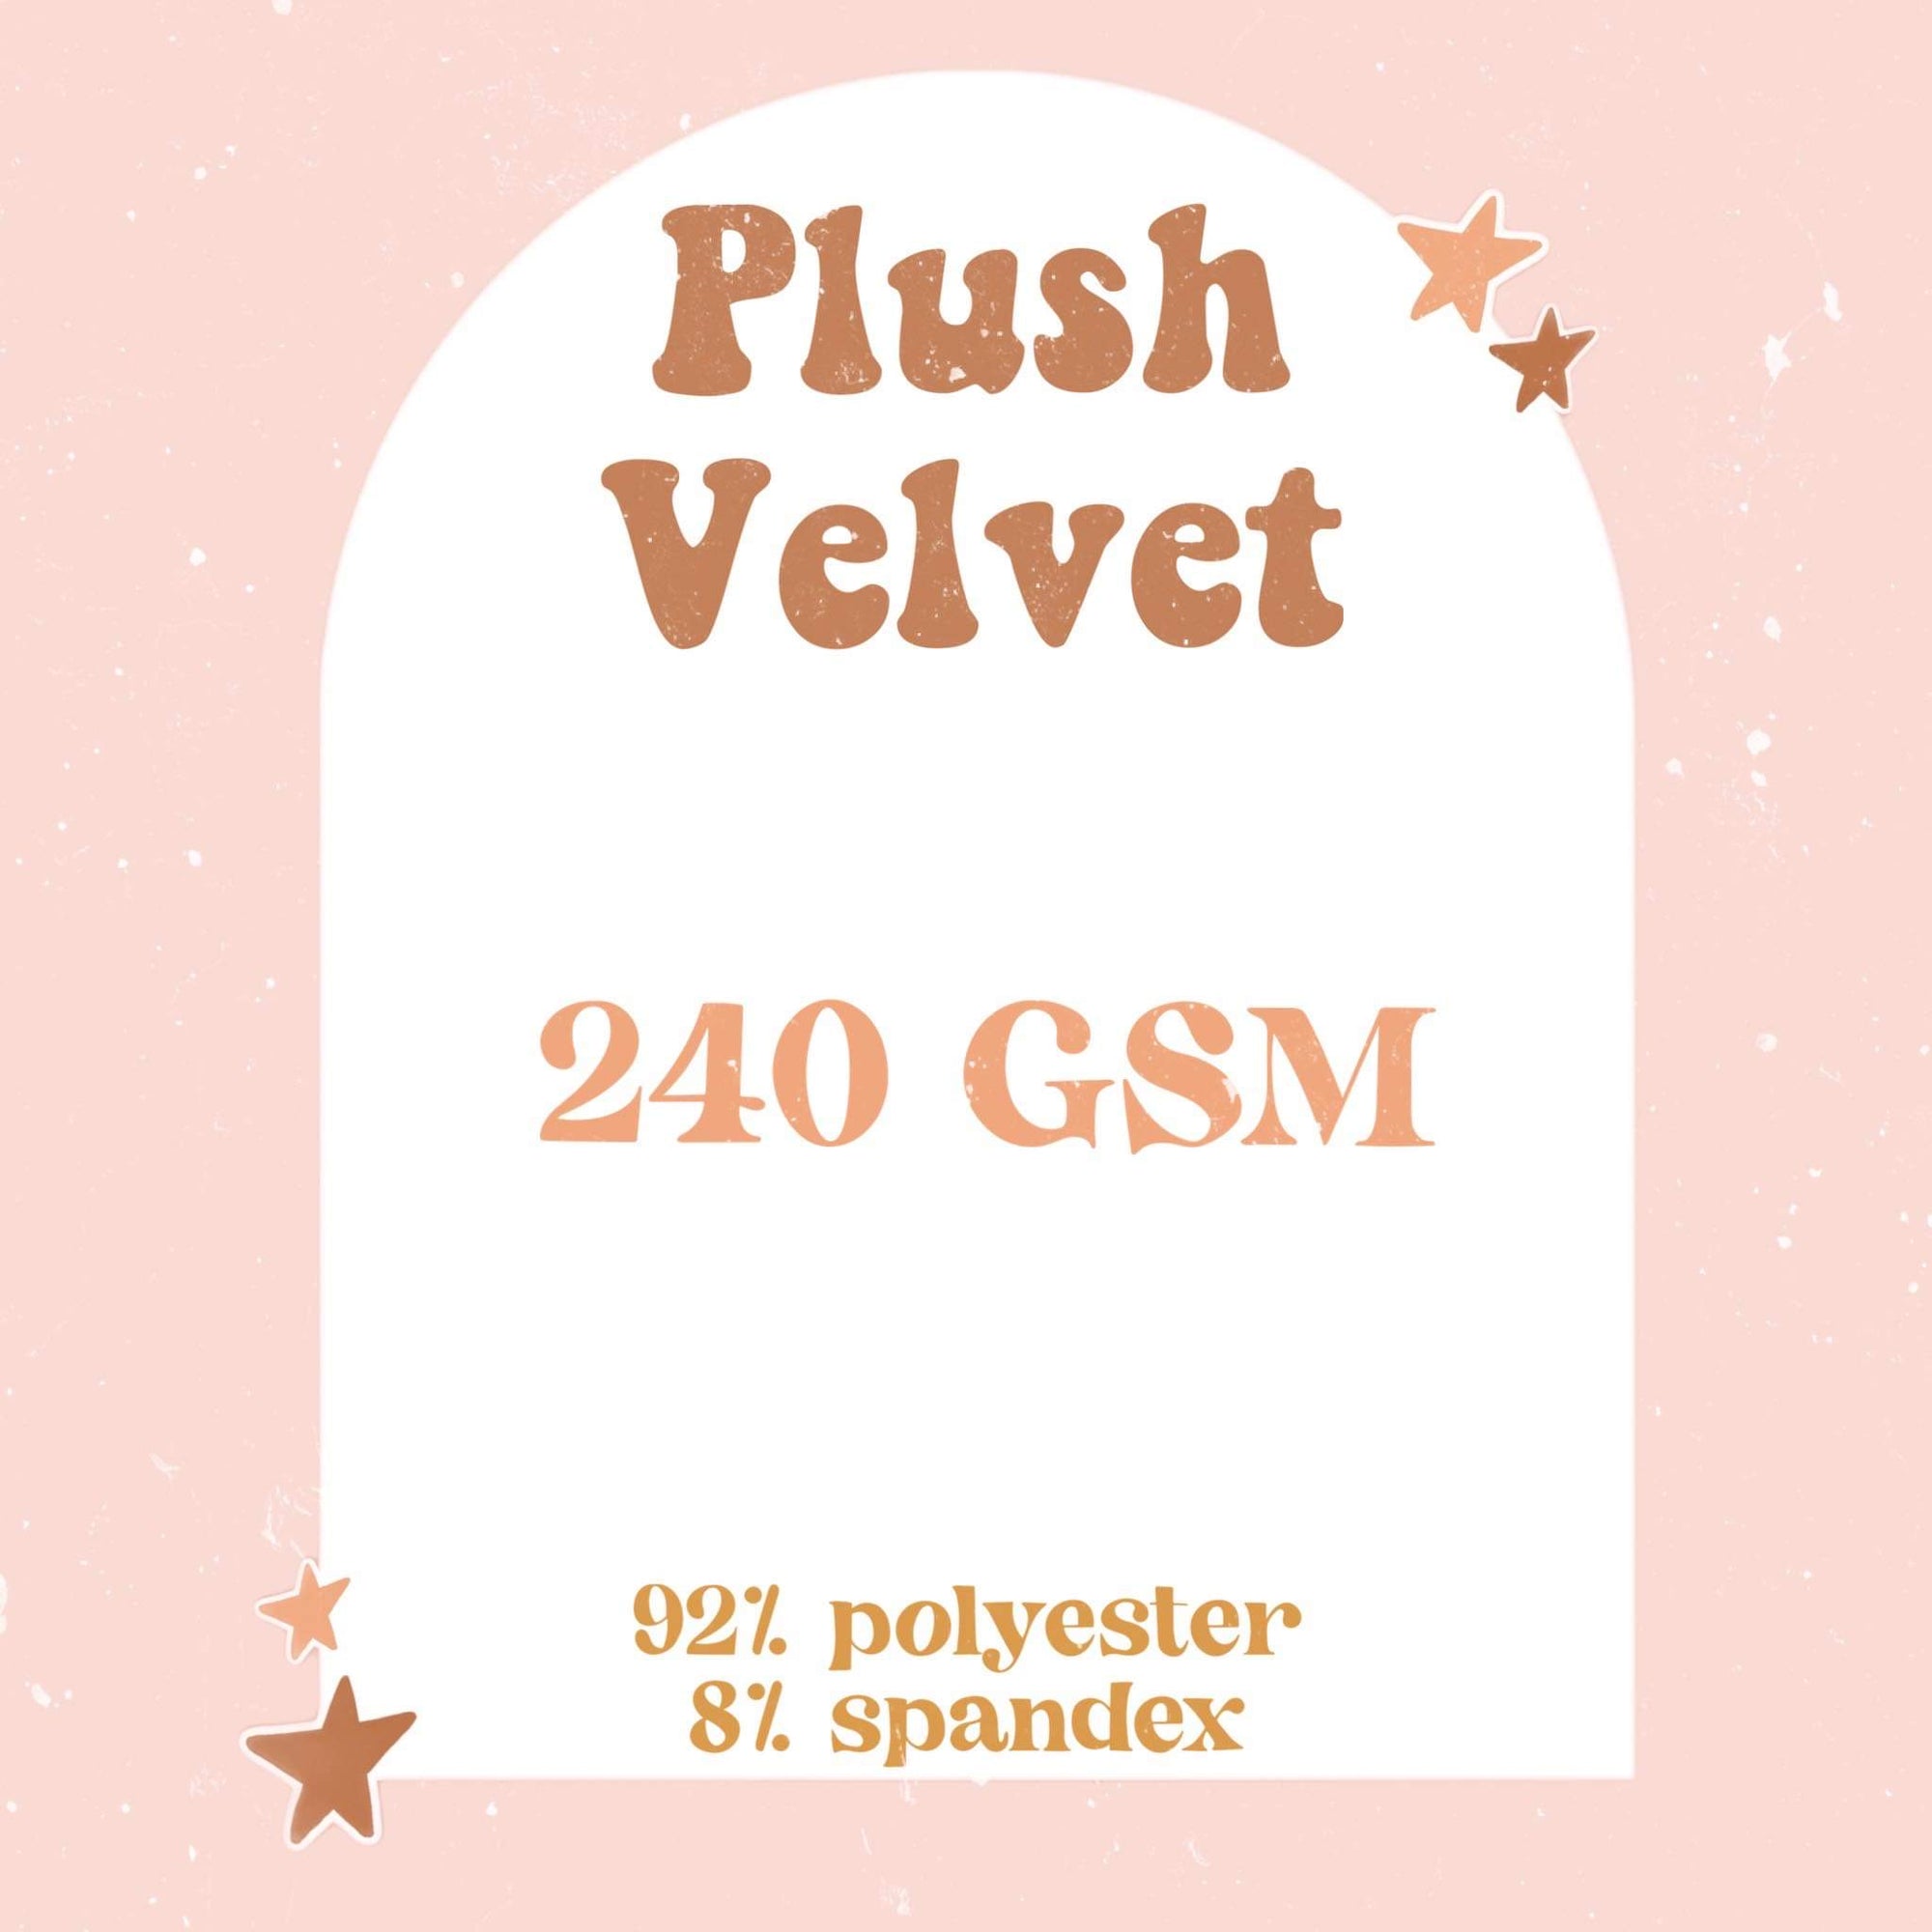 Plush Velvet